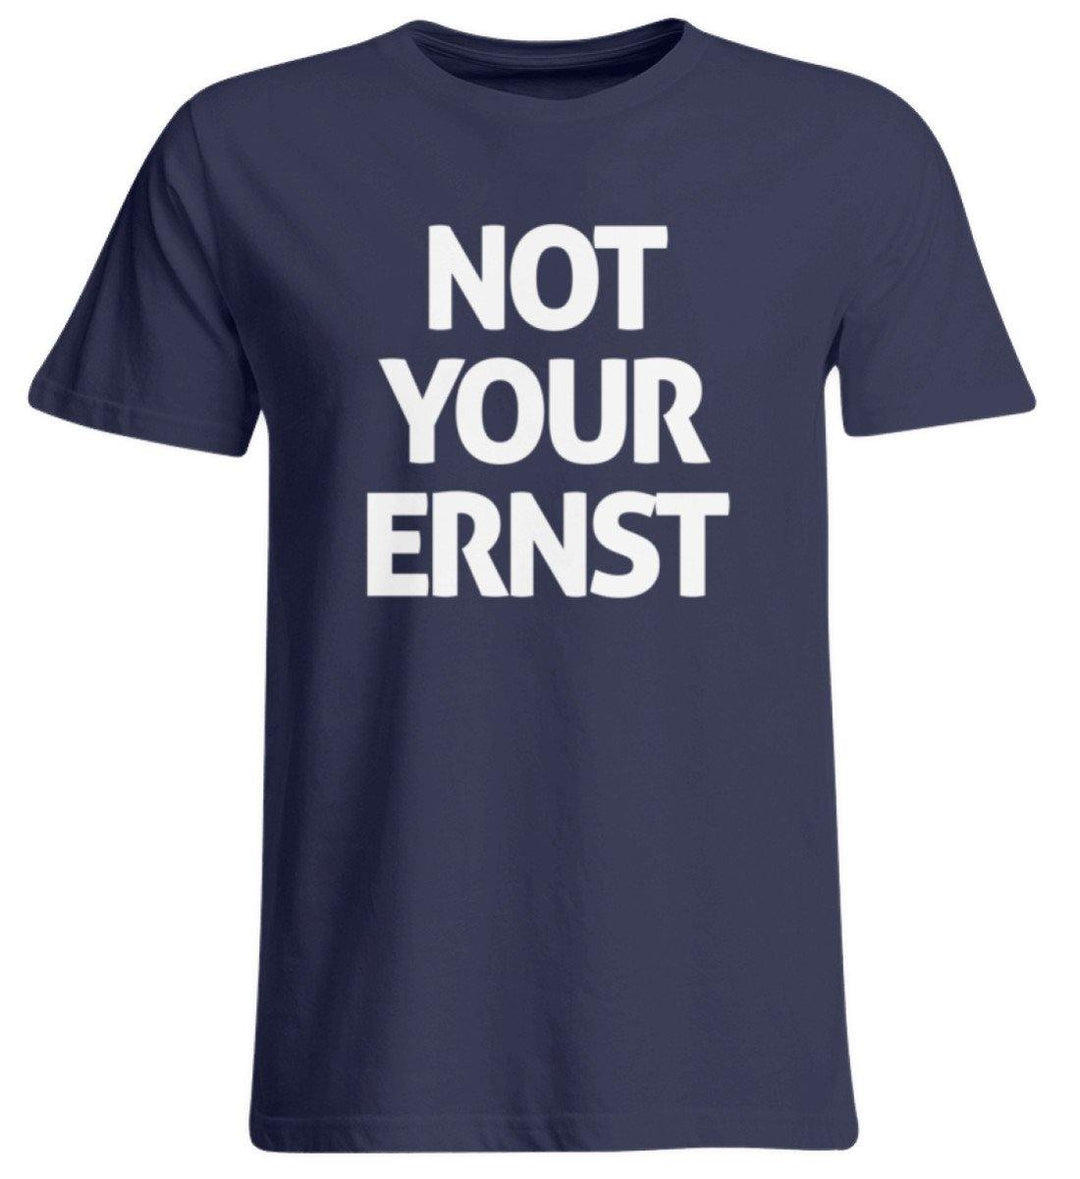 Not Your Ernst - Words on Shirt  - Übergrößenshirt - Words on Shirts Sag es mit dem Mittelfinger Shirts Hoodies Sweatshirt Taschen Gymsack Spruch Sprüche Statement